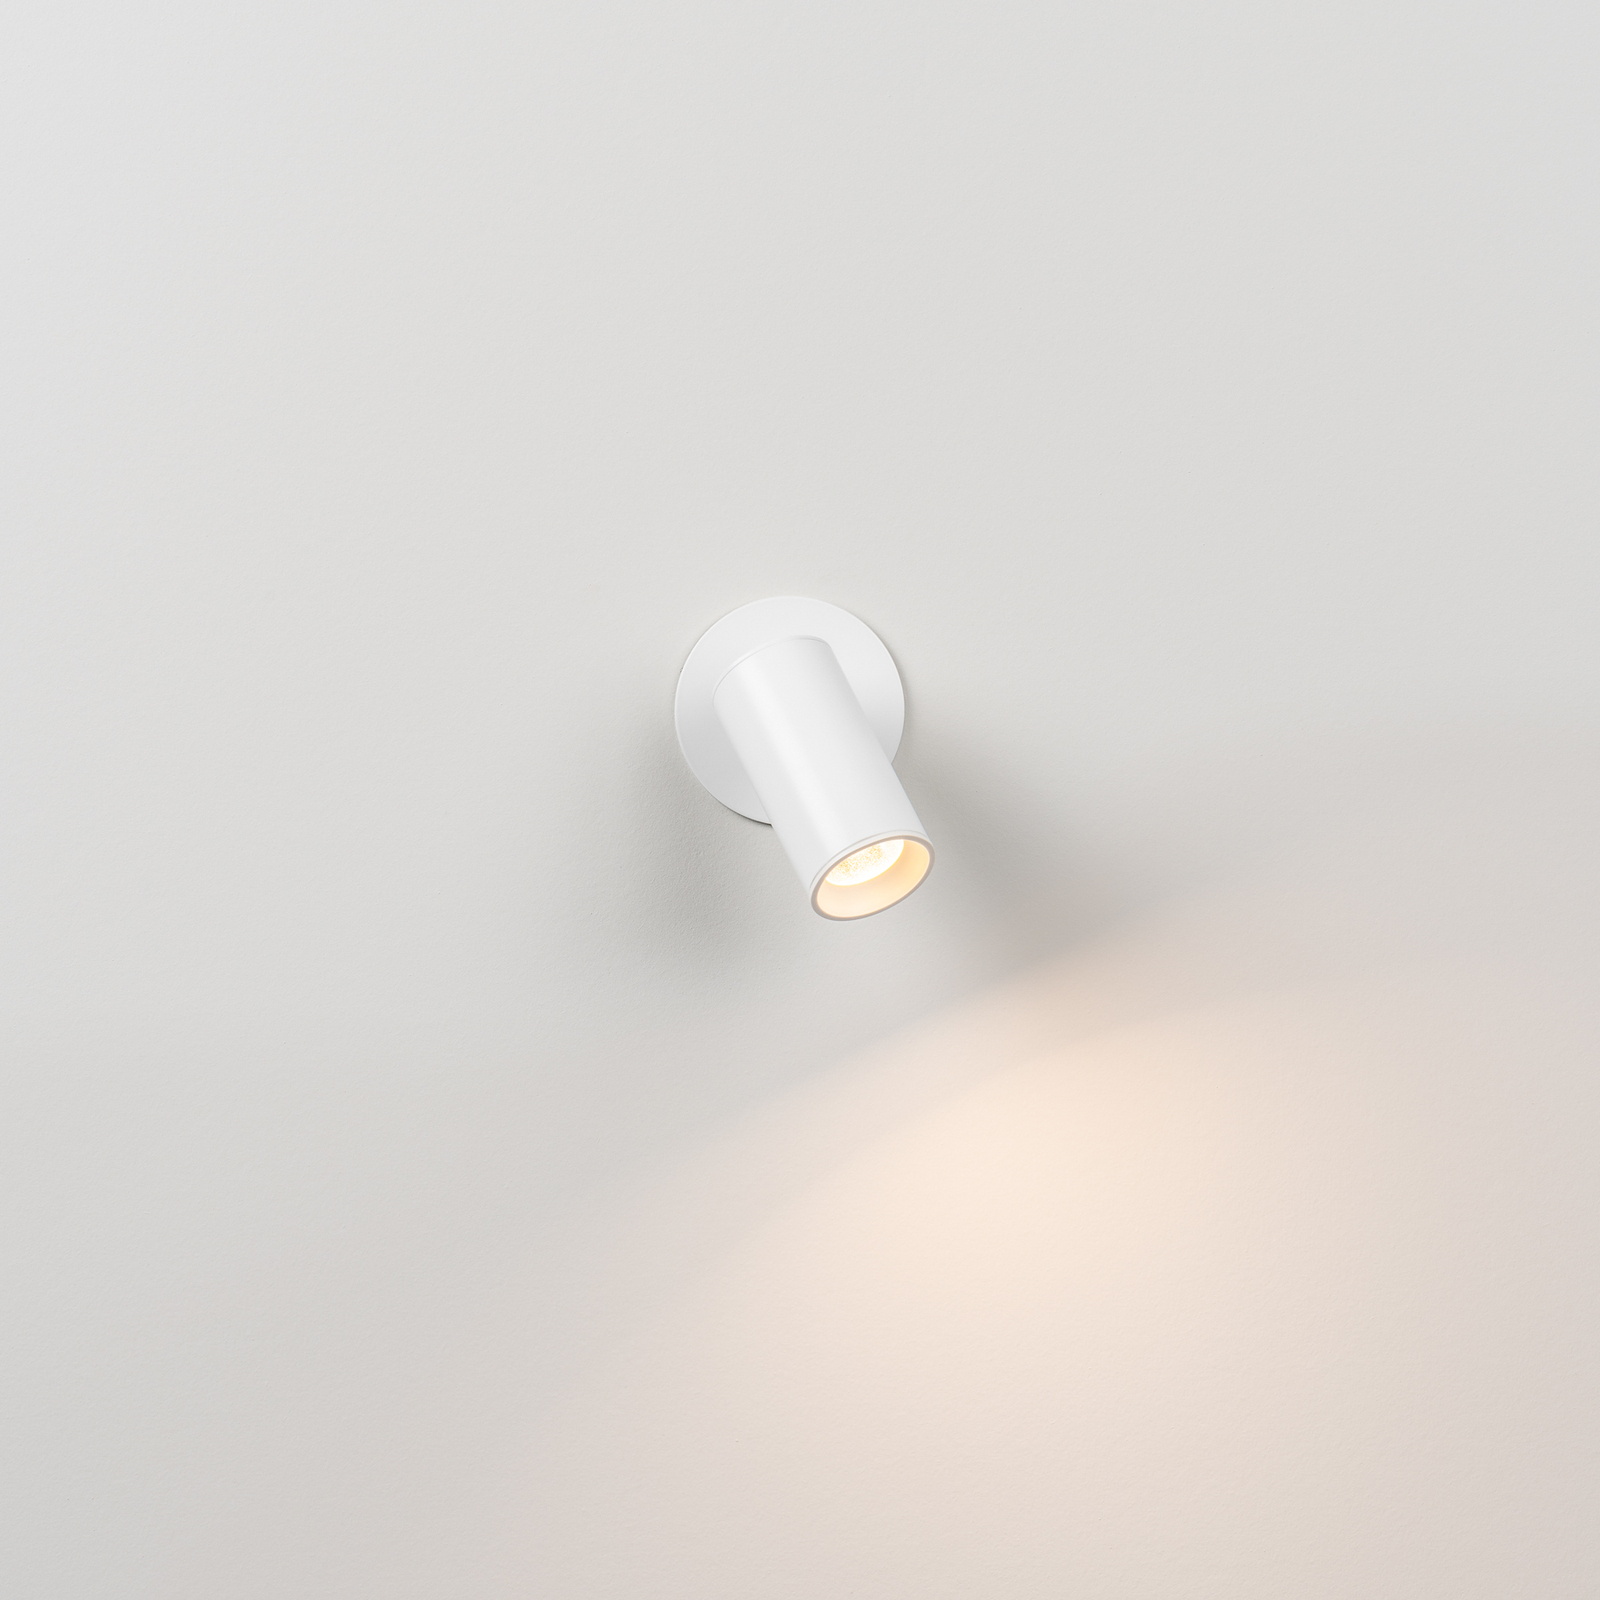 Milan Haul LED-Einbauleuchte weiß